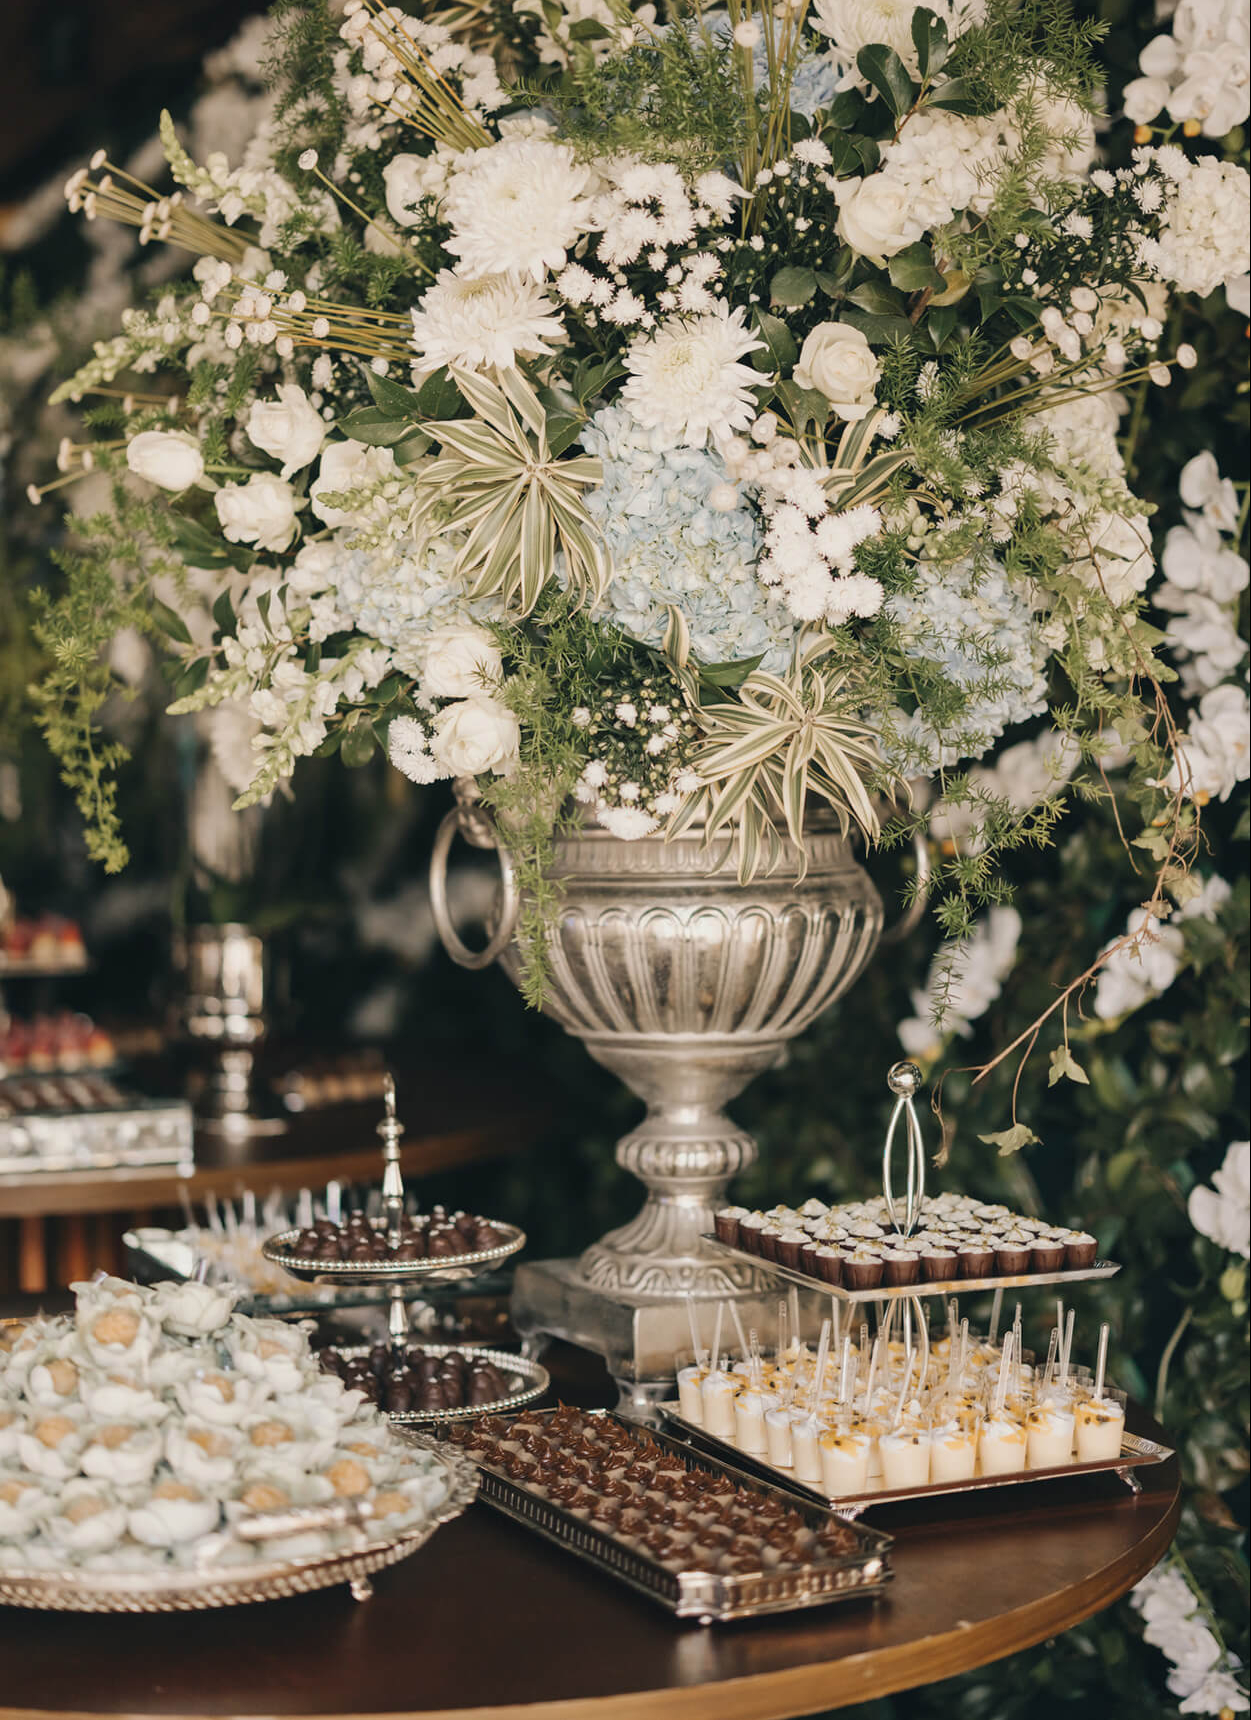 Vaso prateado com flores brancas e pratos com doces de casamento na mesa